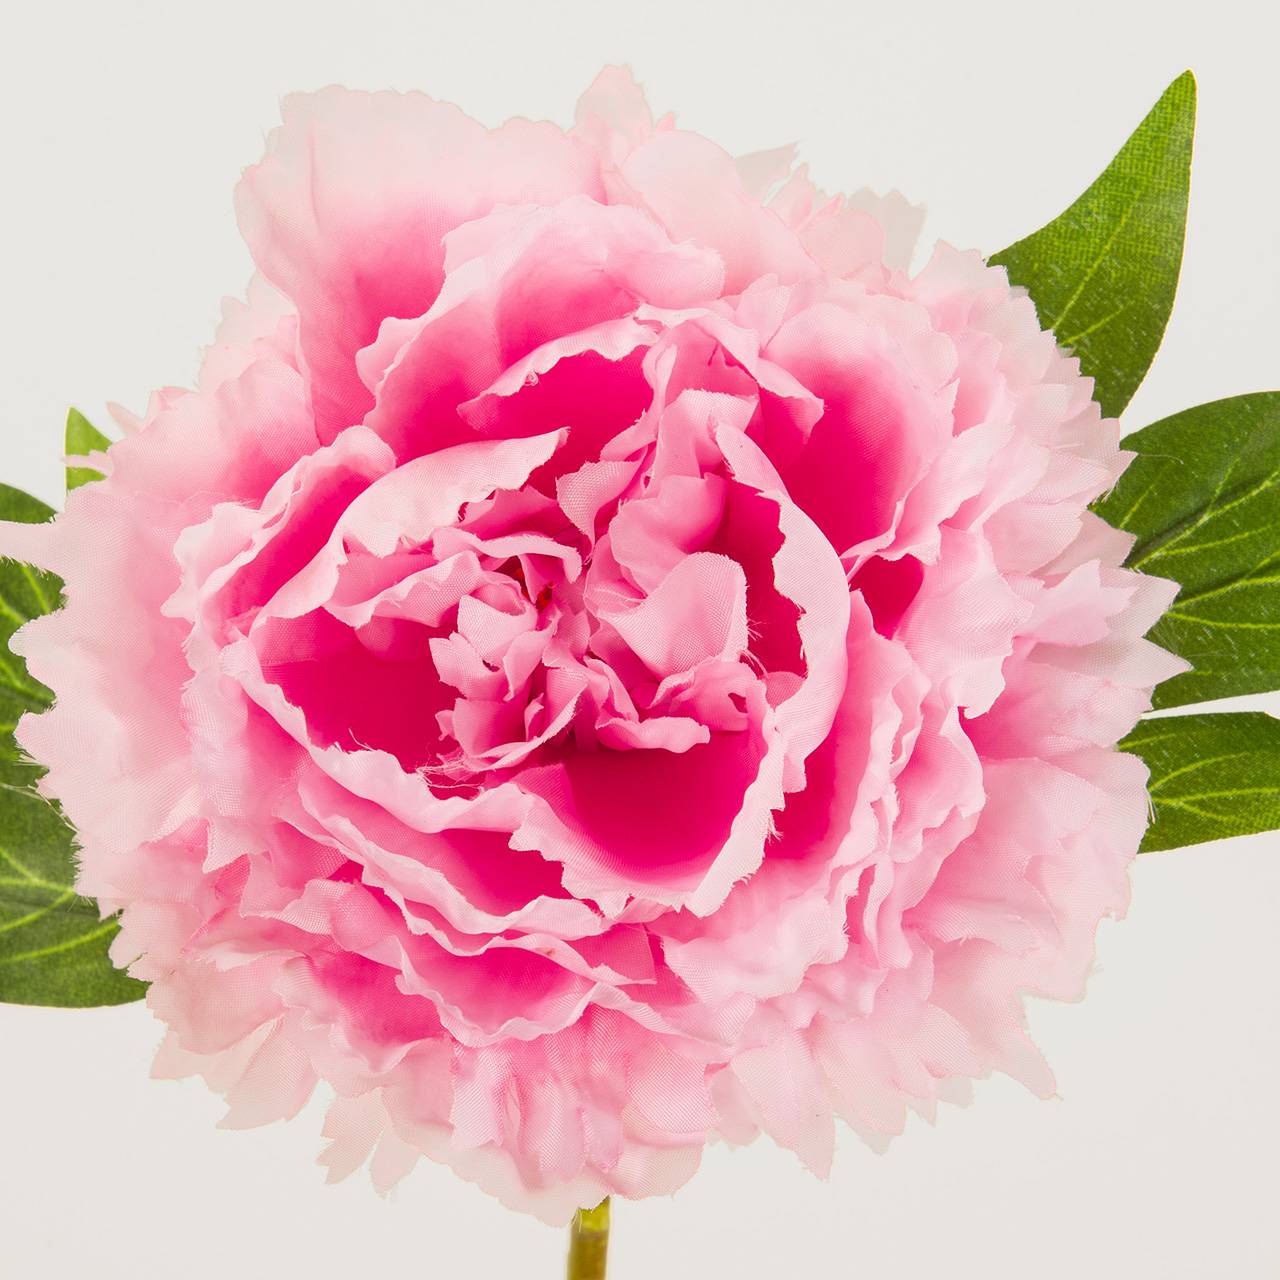 マイフラ 通販 Magiq 小春牡丹 ピンク アーティフィシャルフラワー 造花 Fm 002 ピオニー 牡丹 ピンク Magiq アーティフィシャルフラワー 造花 全国にmagiq 花器 花資材などをお届けします